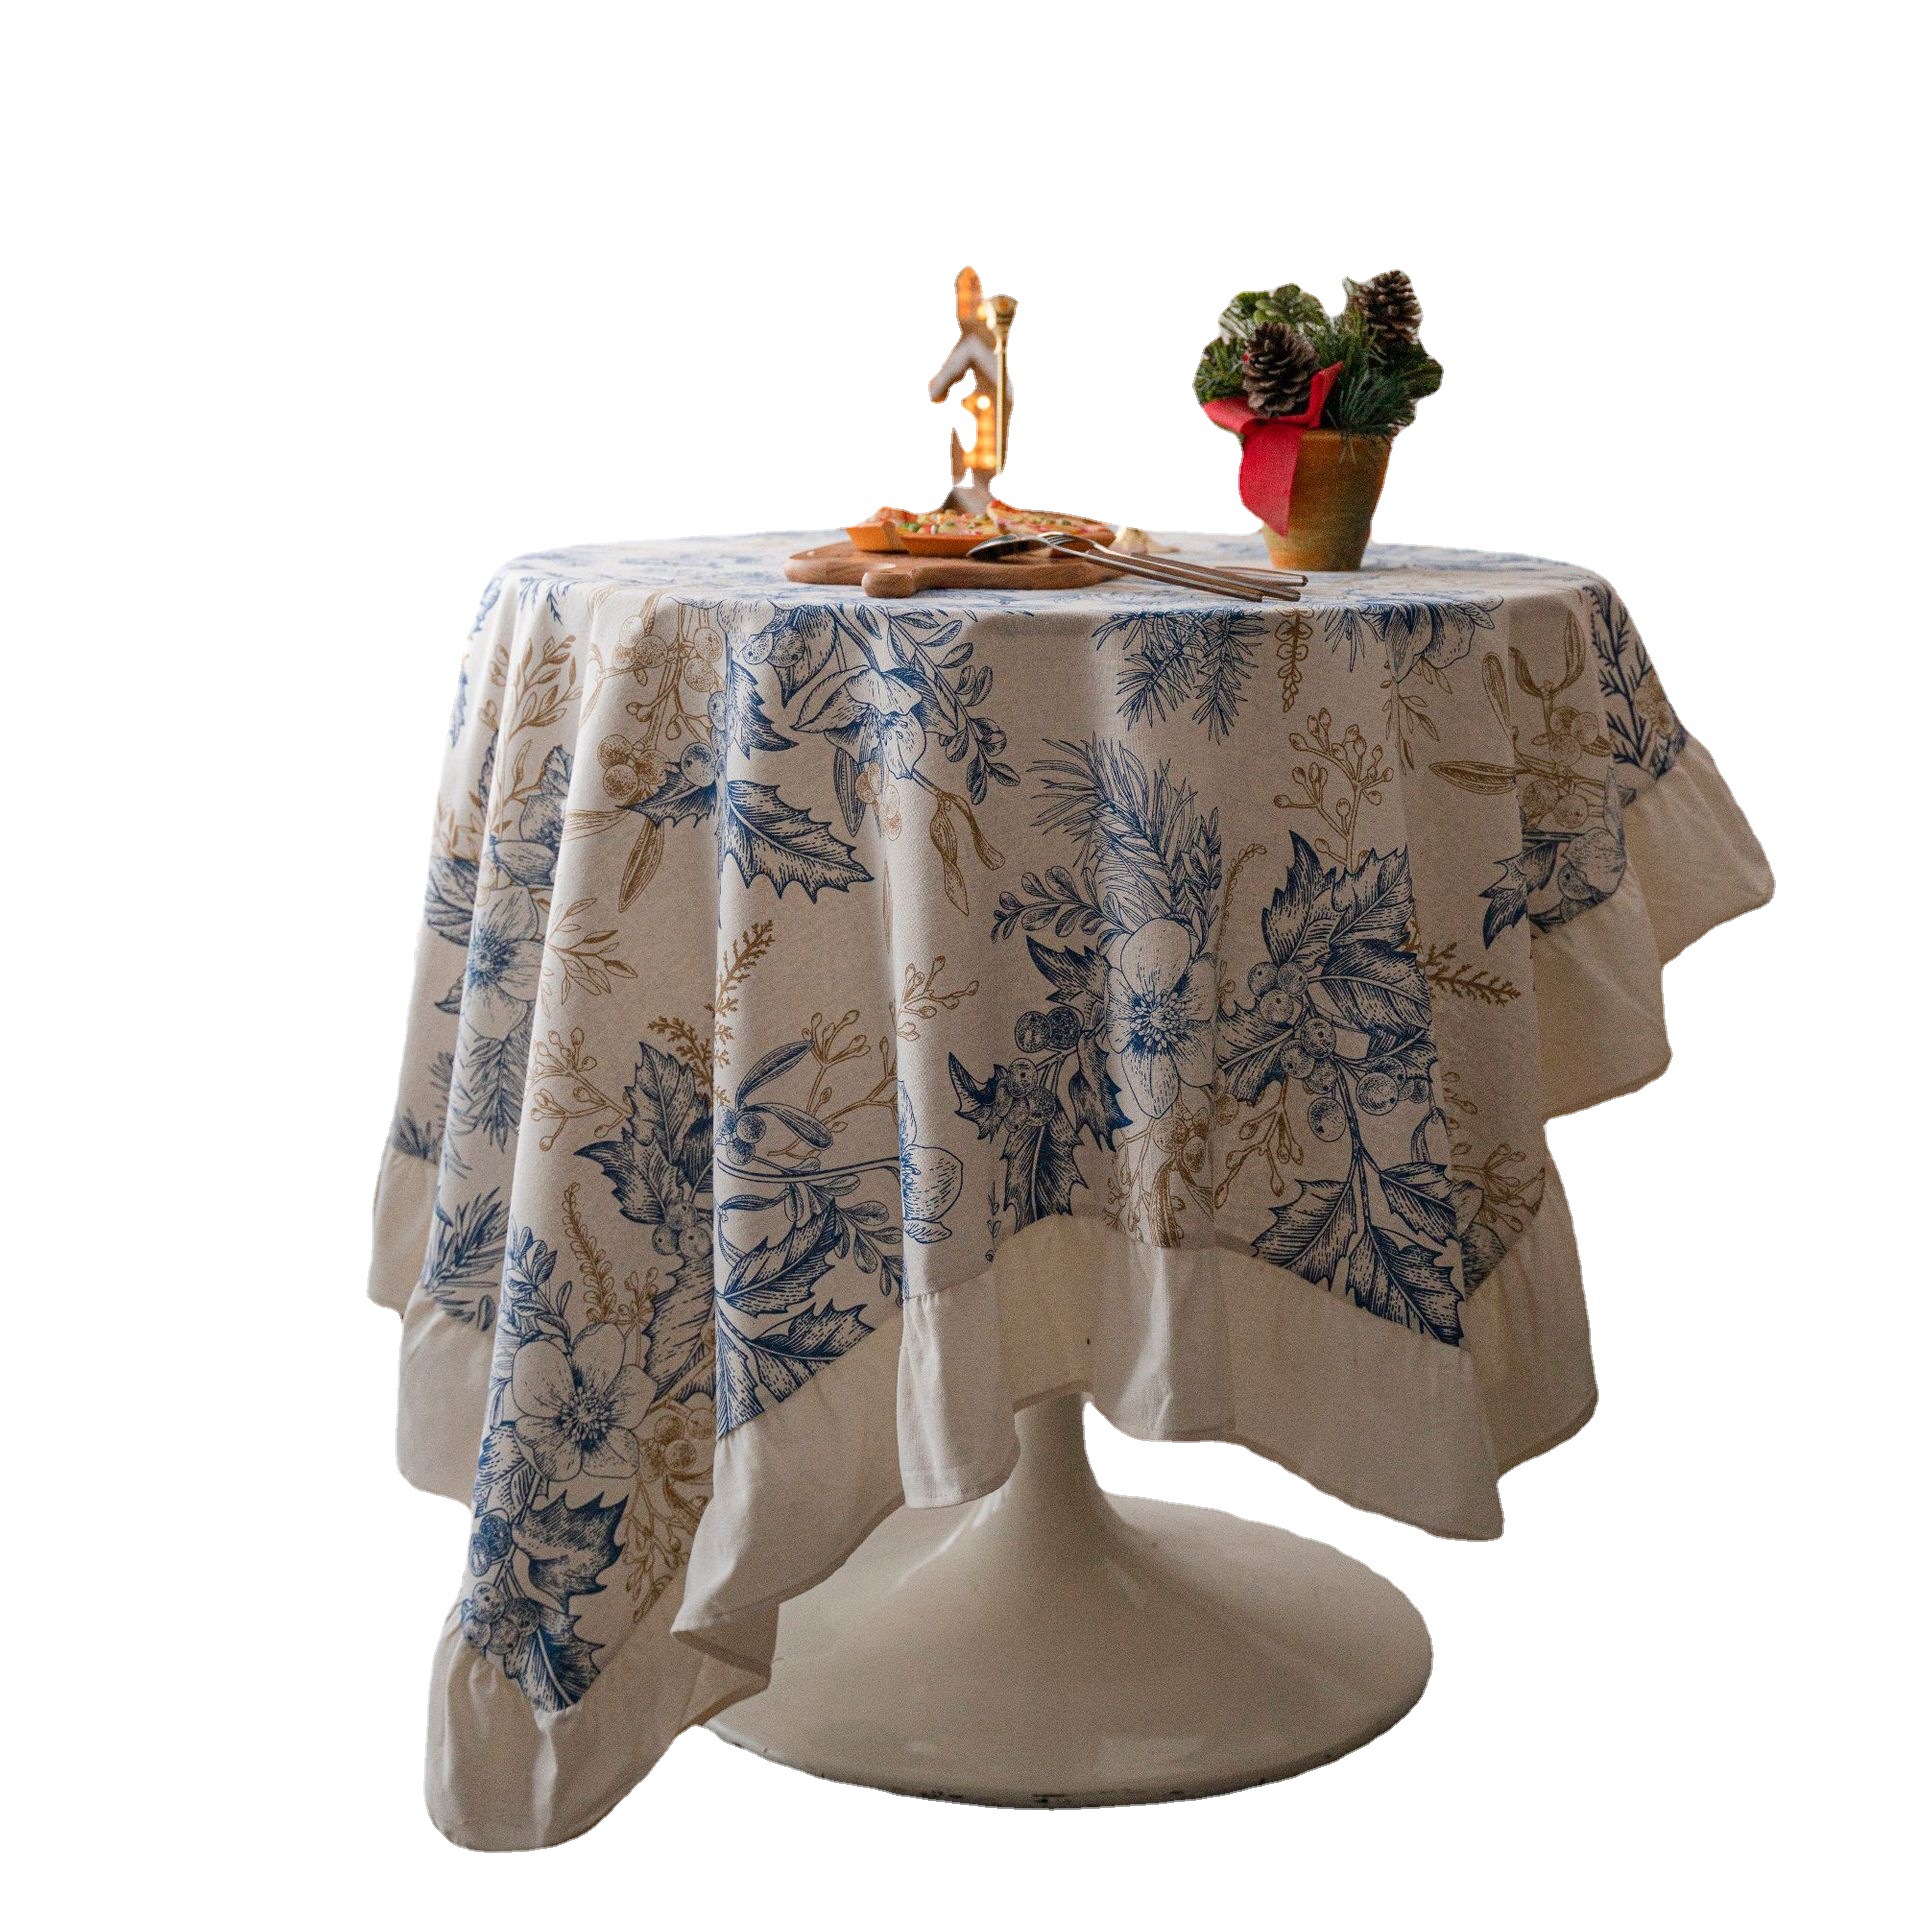 美式田园茶几垫圆形餐桌布荷叶边植物印花节日装饰桌布盖布长方形